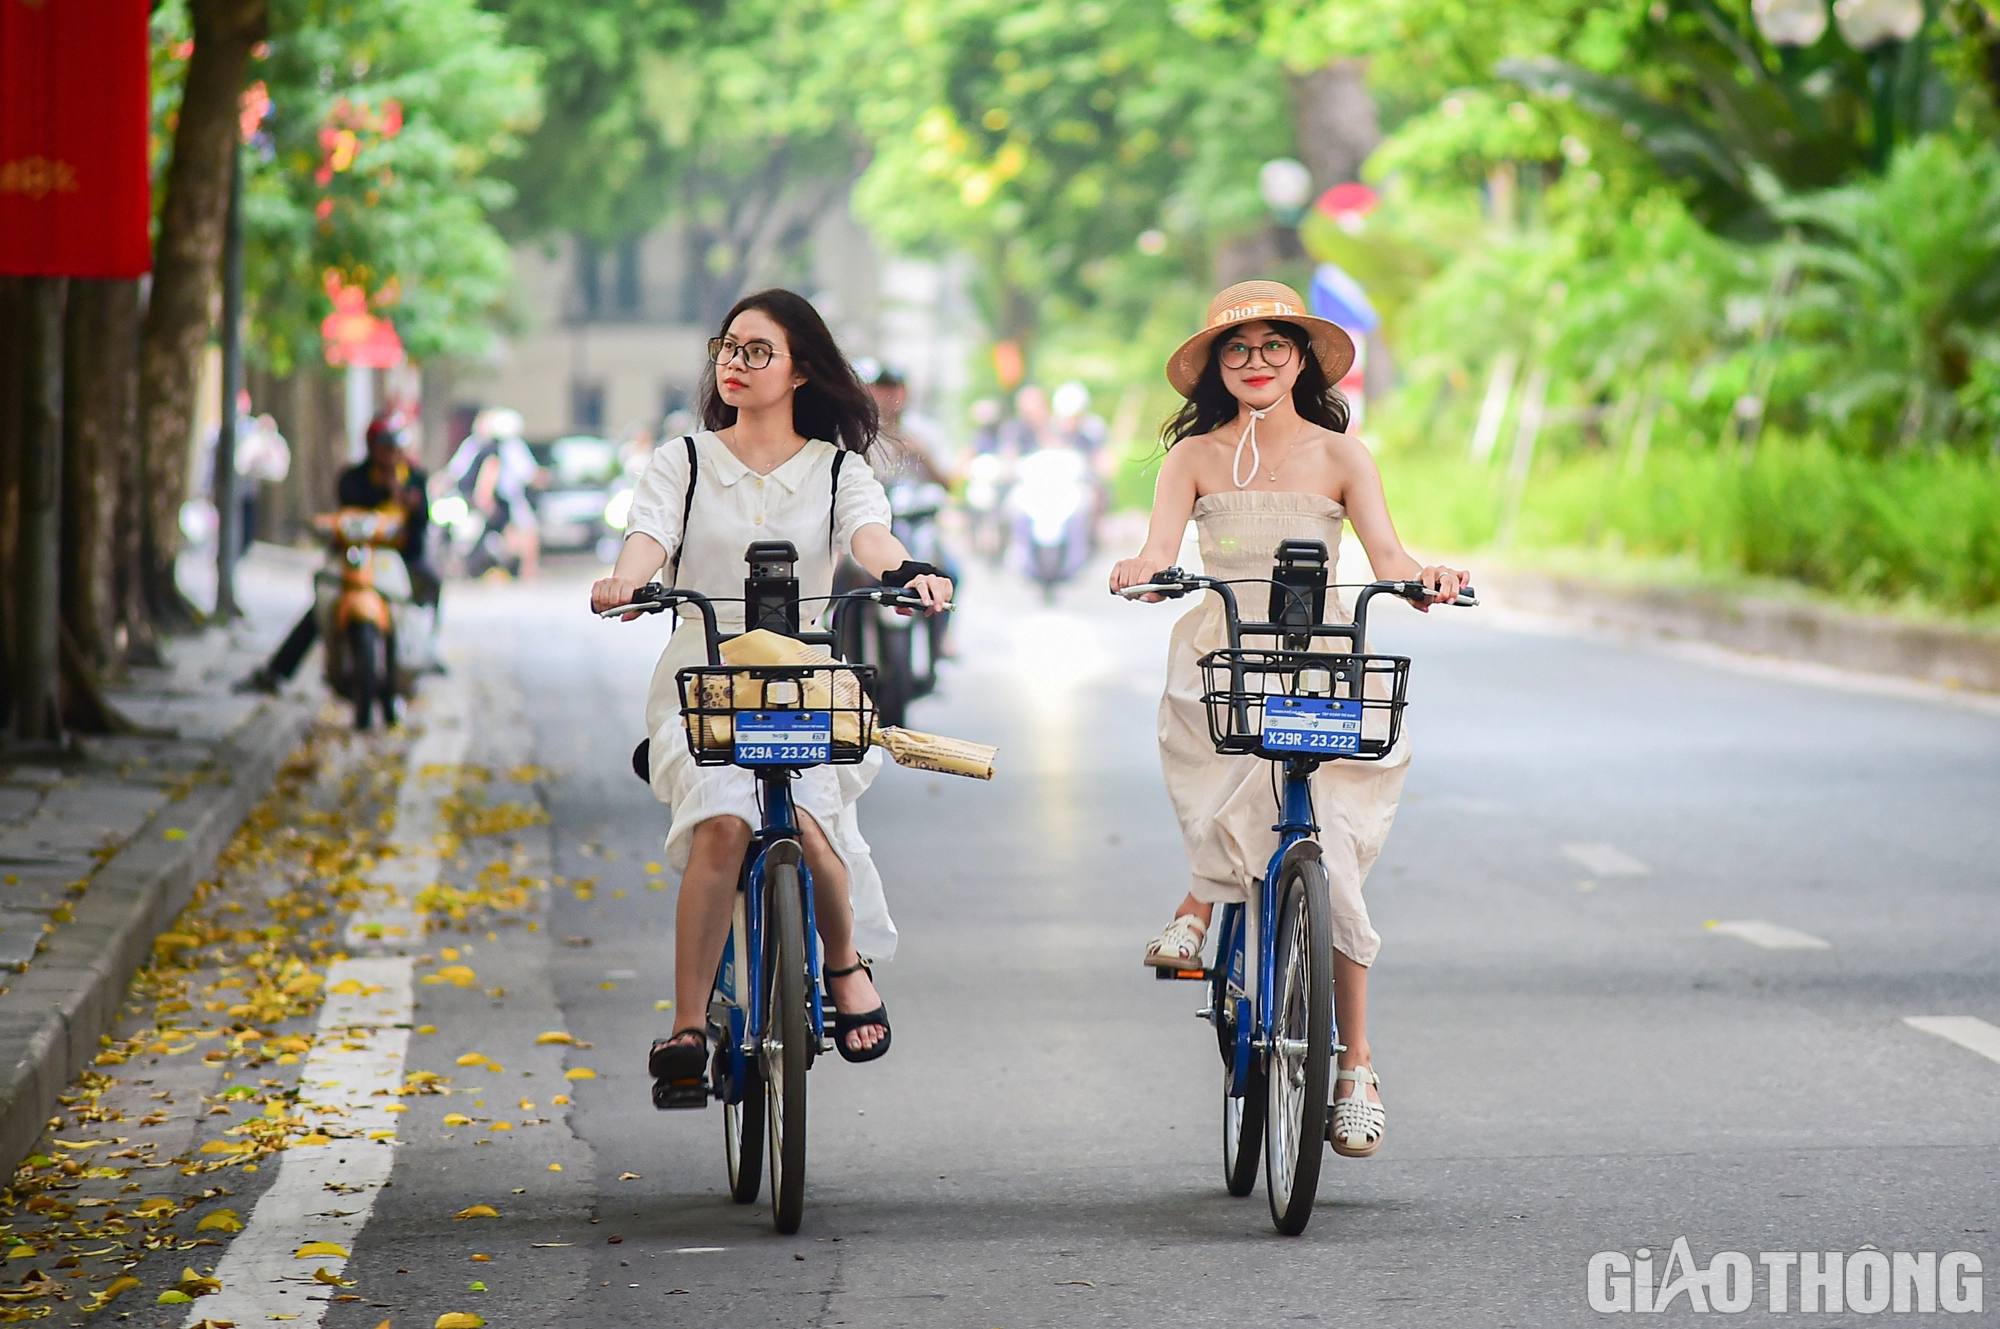 Nửa tháng ra mắt, xe đạp công cộng được người dân Thủ đô ưa chuộng - Ảnh 6.